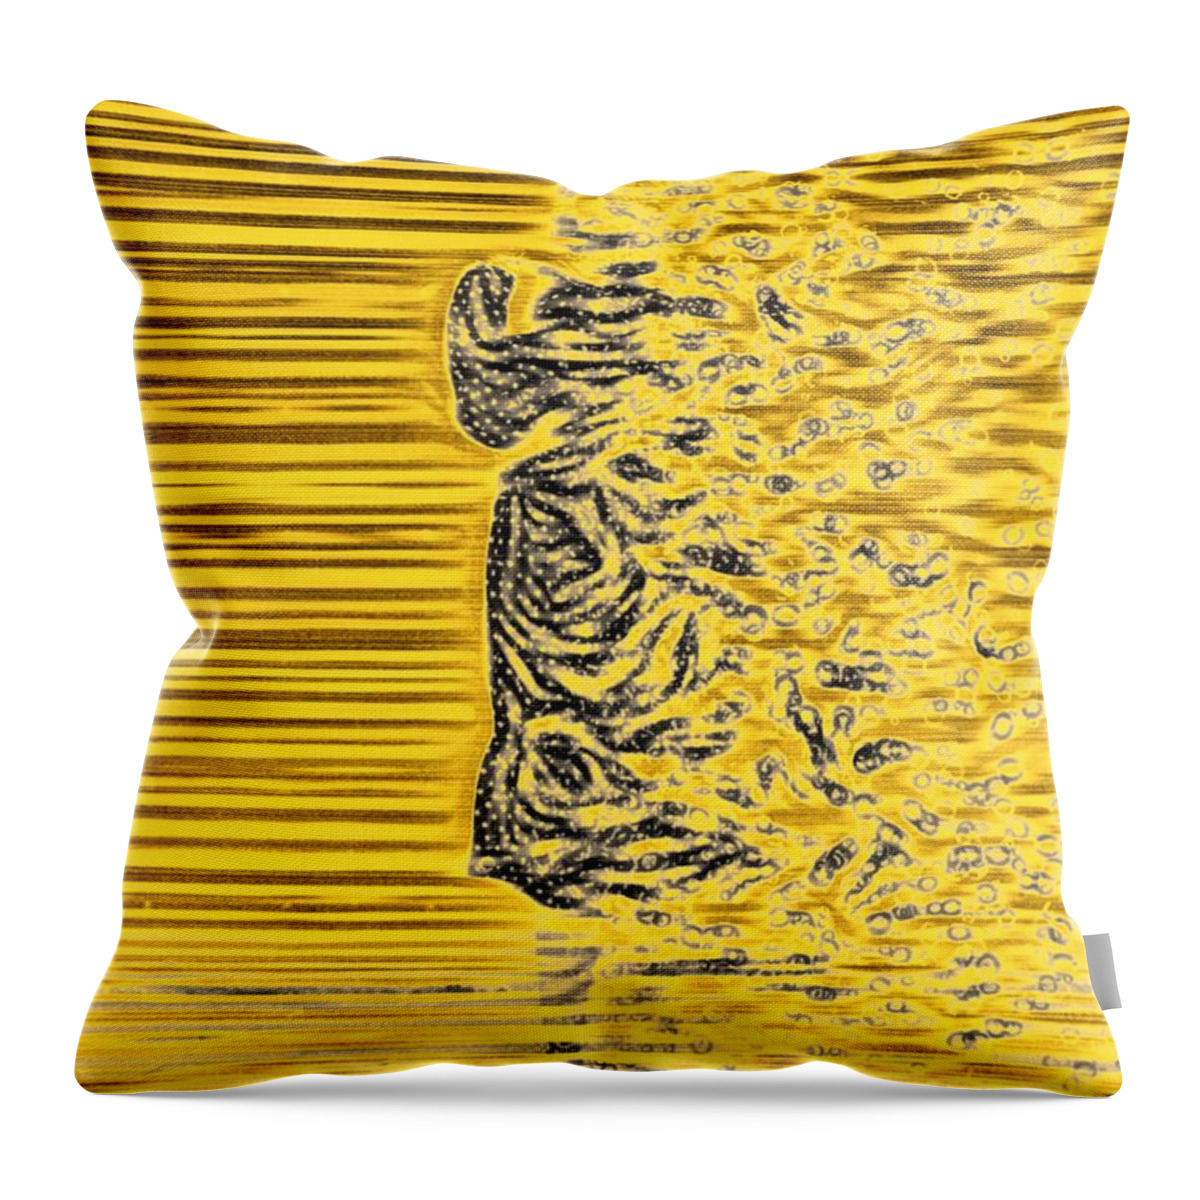 Abstract Throw Pillow featuring the digital art FiRE by Auranatura Art